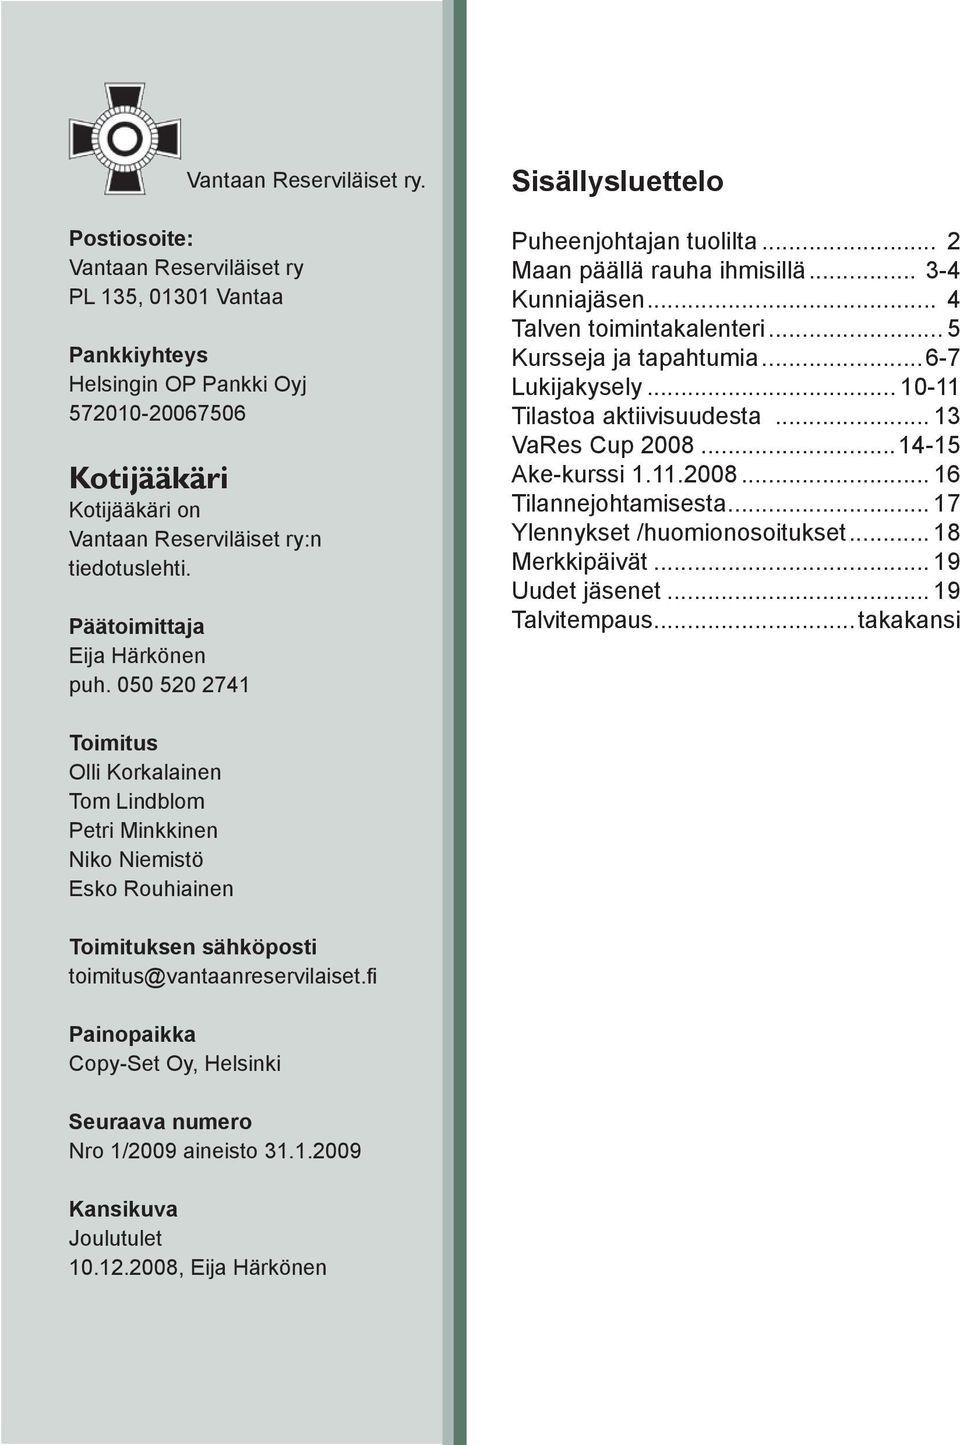 Päätoimittaja Eija Härkönen puh. 050 520 2741 Sisällysluettelo Puheenjohtajan tuolilta... 2 Maan päällä rauha ihmisillä... 3-4 Kunniajäsen... 4 Talven toimintakalenteri... 5 Kursseja ja tapahtumia.